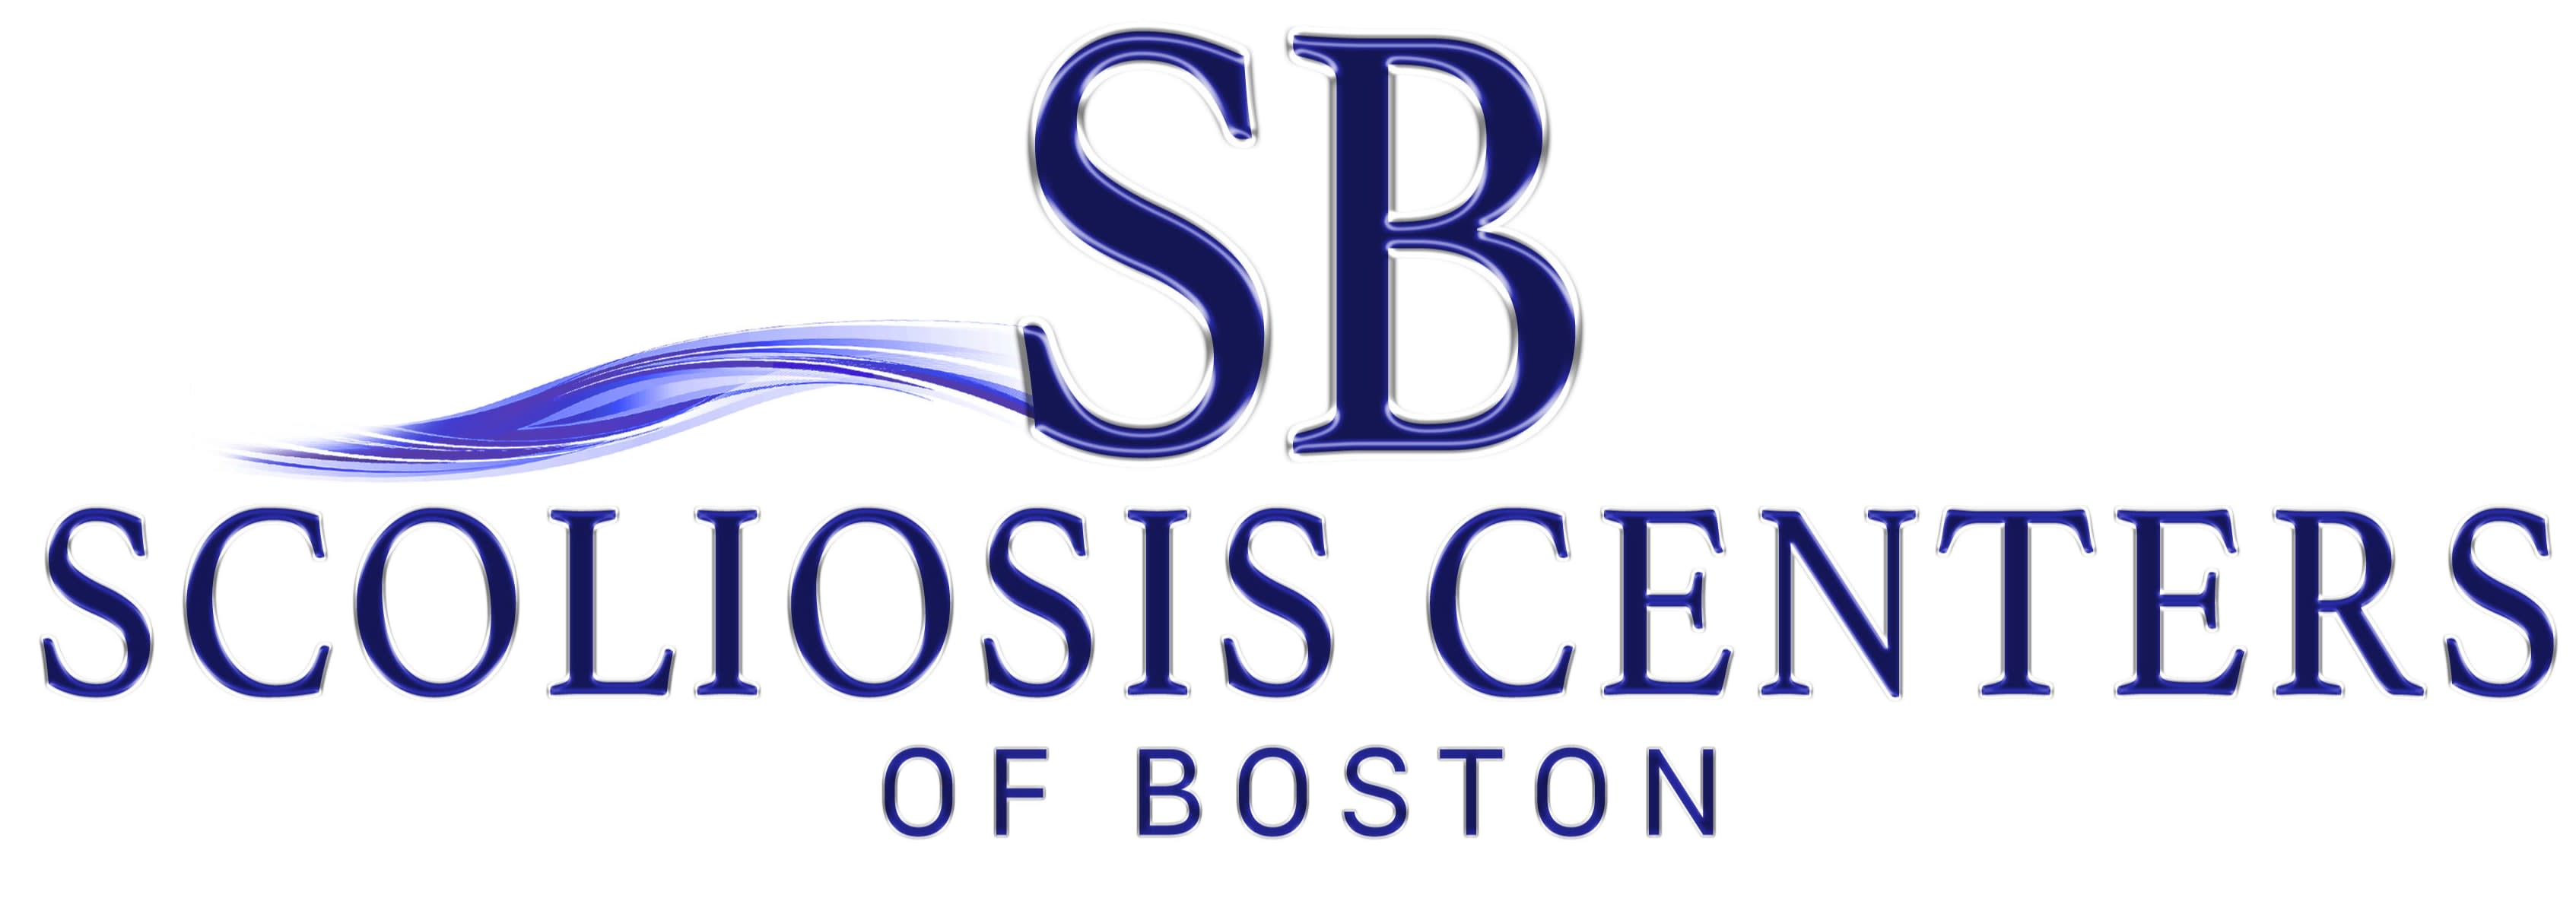 Scoliosis Centers of Boston